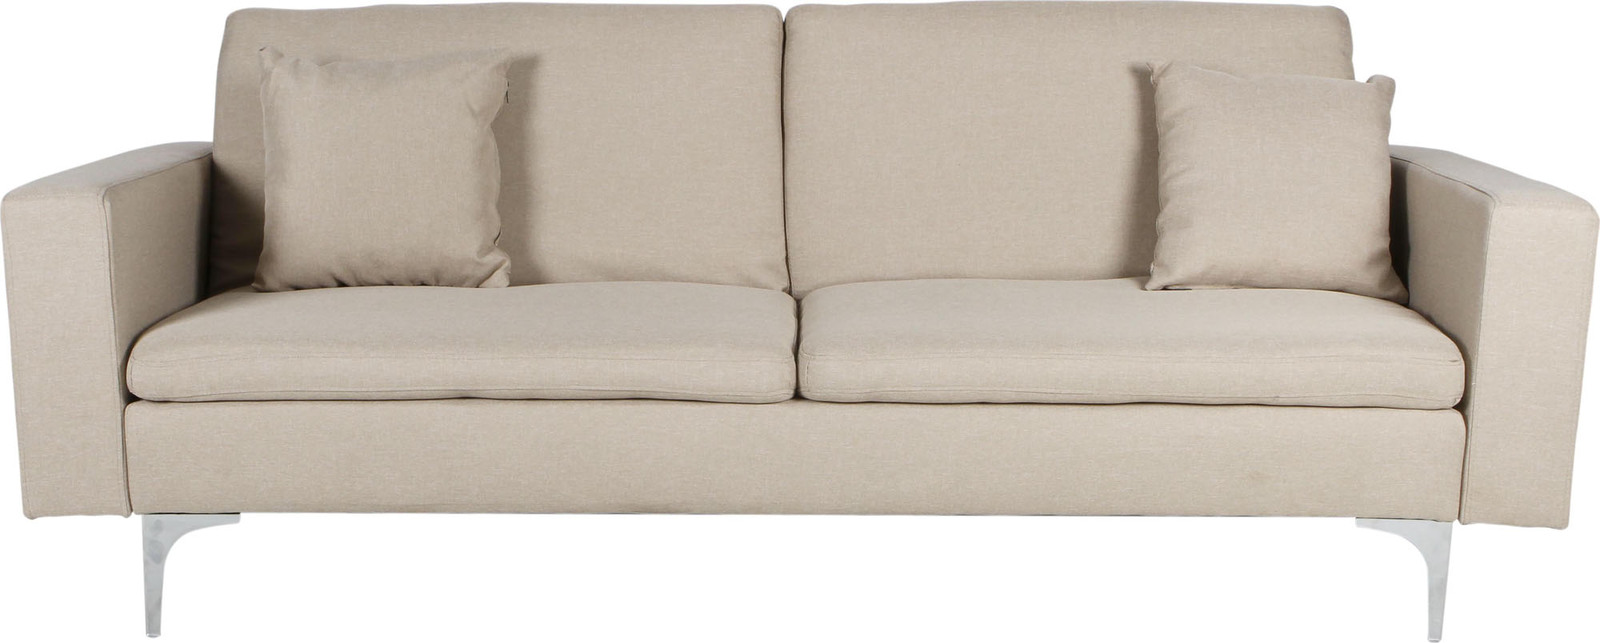 Sweda Linen Look 3 Seater Sofa Bed Lounge Beige